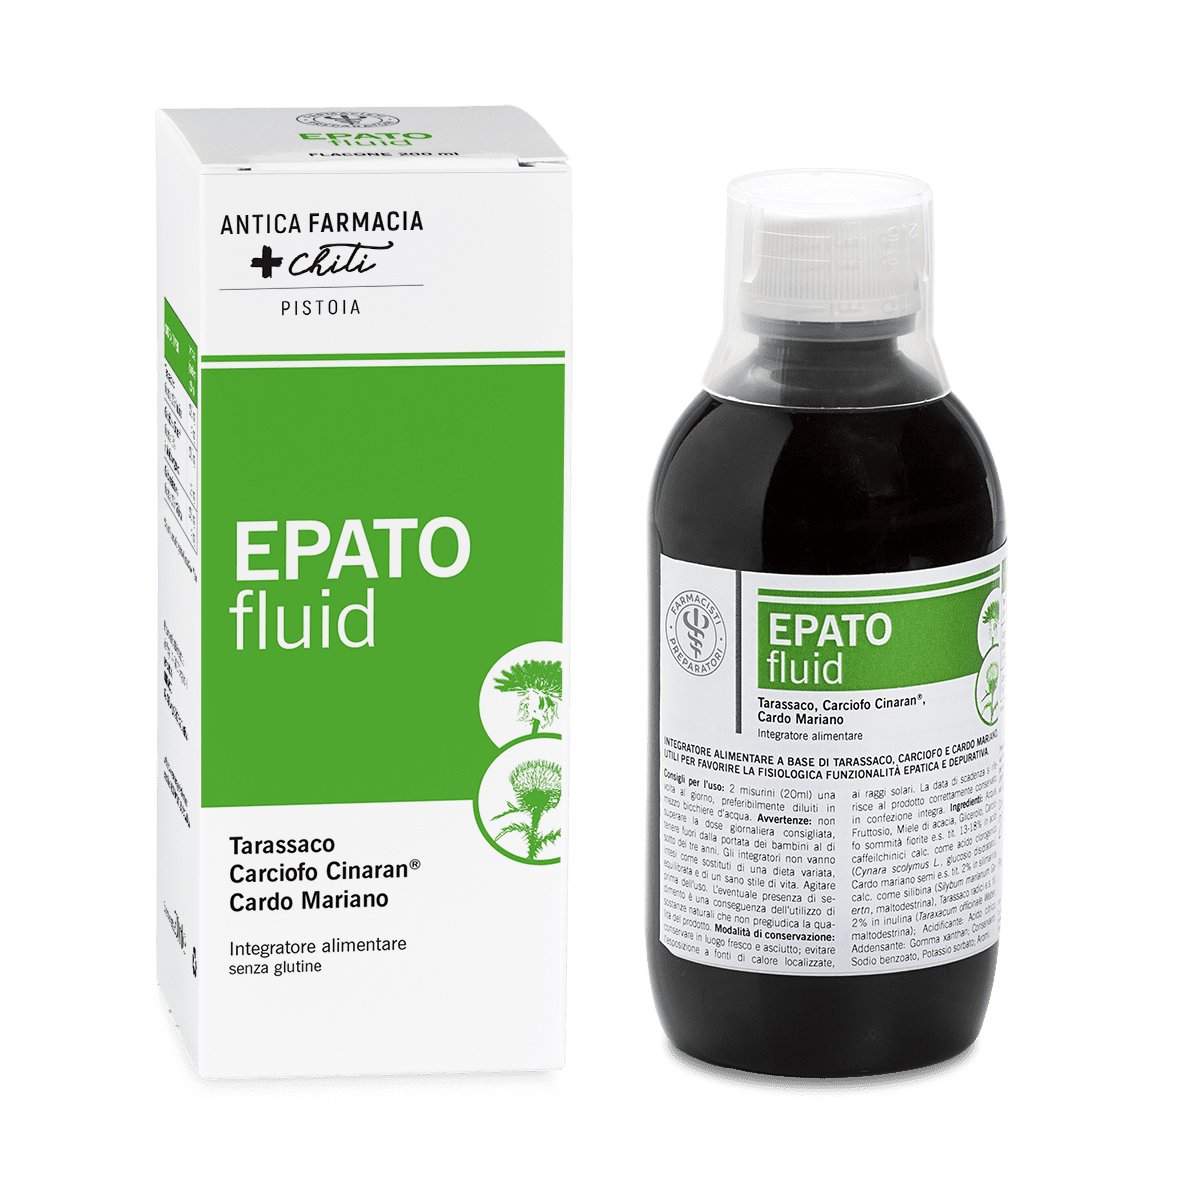 EPATOfluid Integratore Benessere del Fegato Farmacisti Preparatori 200 ml